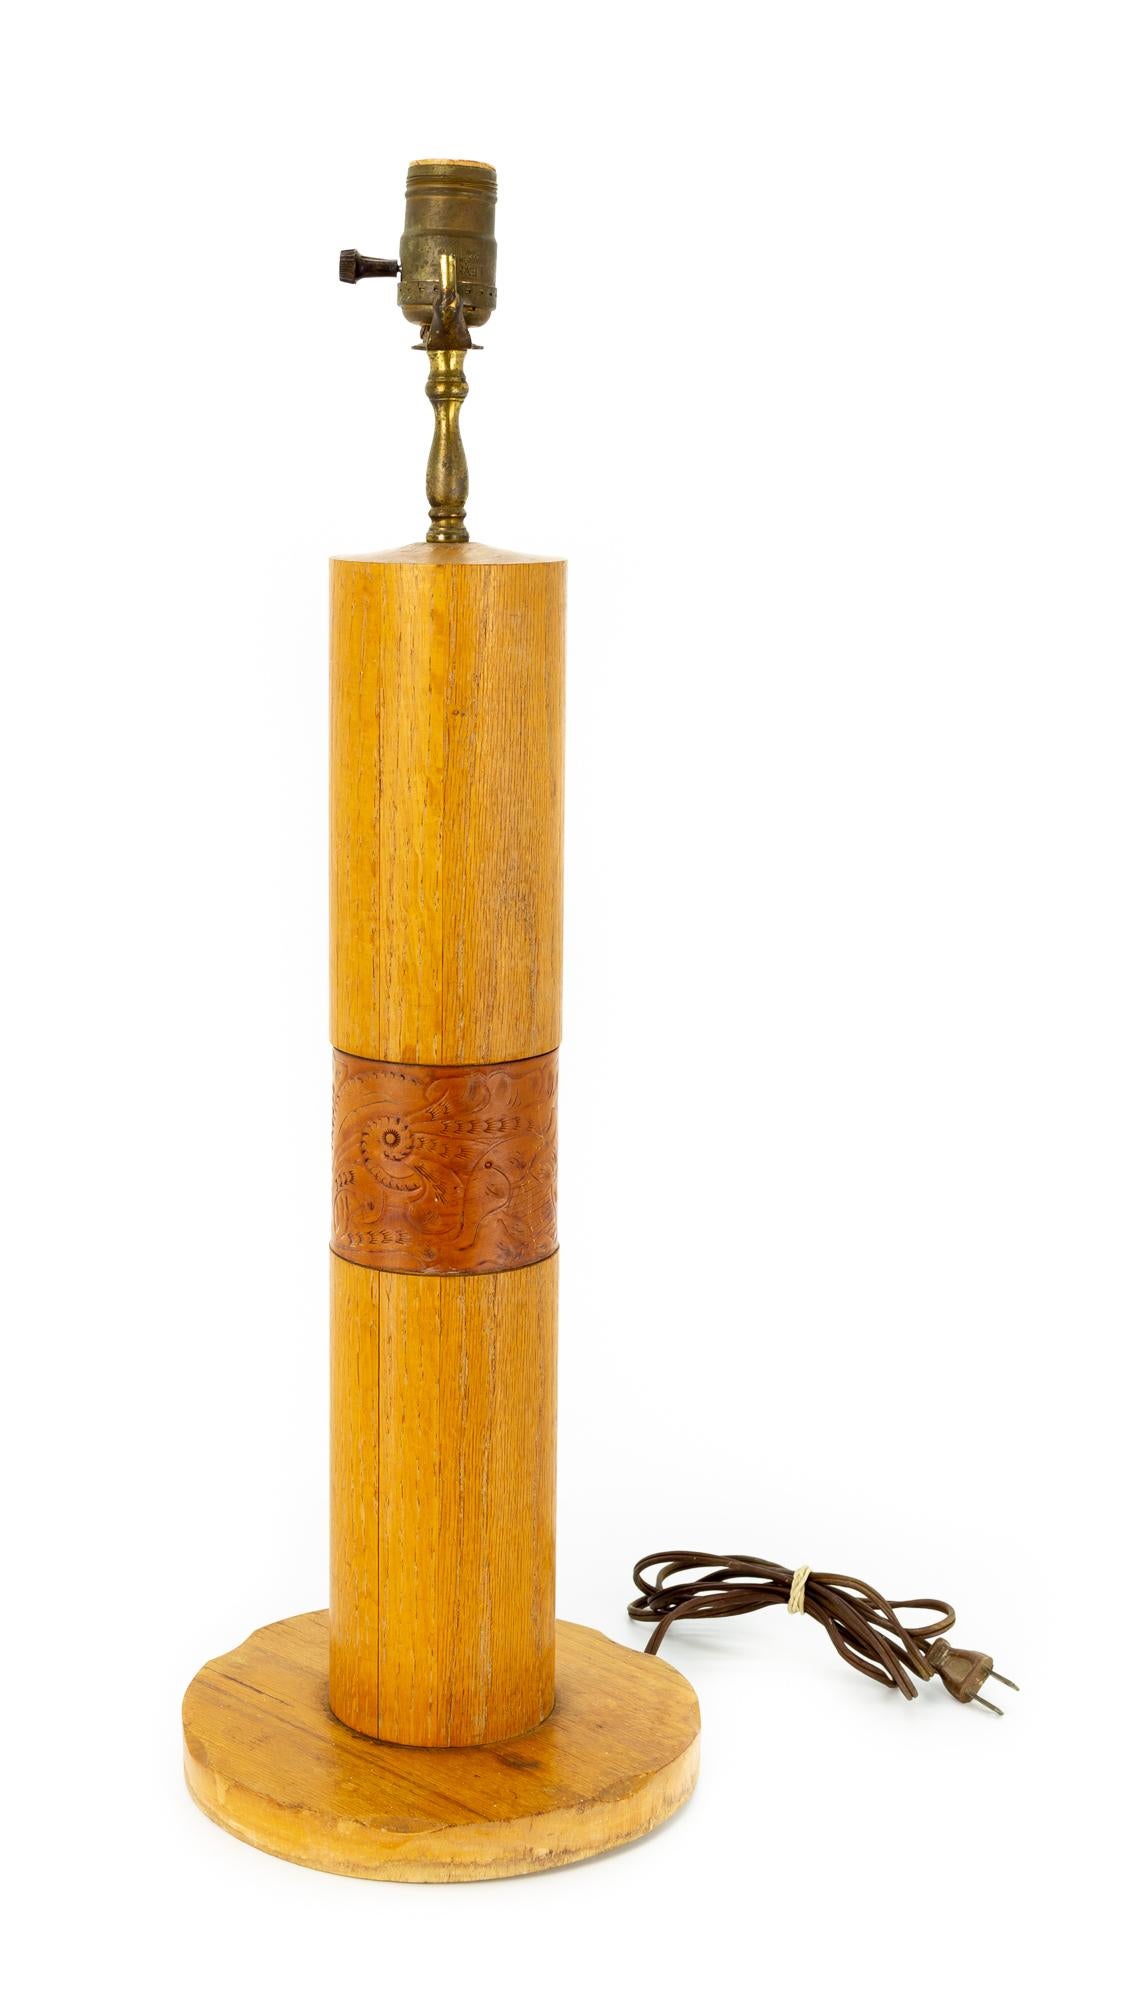 Cuir Bradley - Paire de lampes de bureau mi-siècle en chêne et cuir, fabrication artisanale en vente